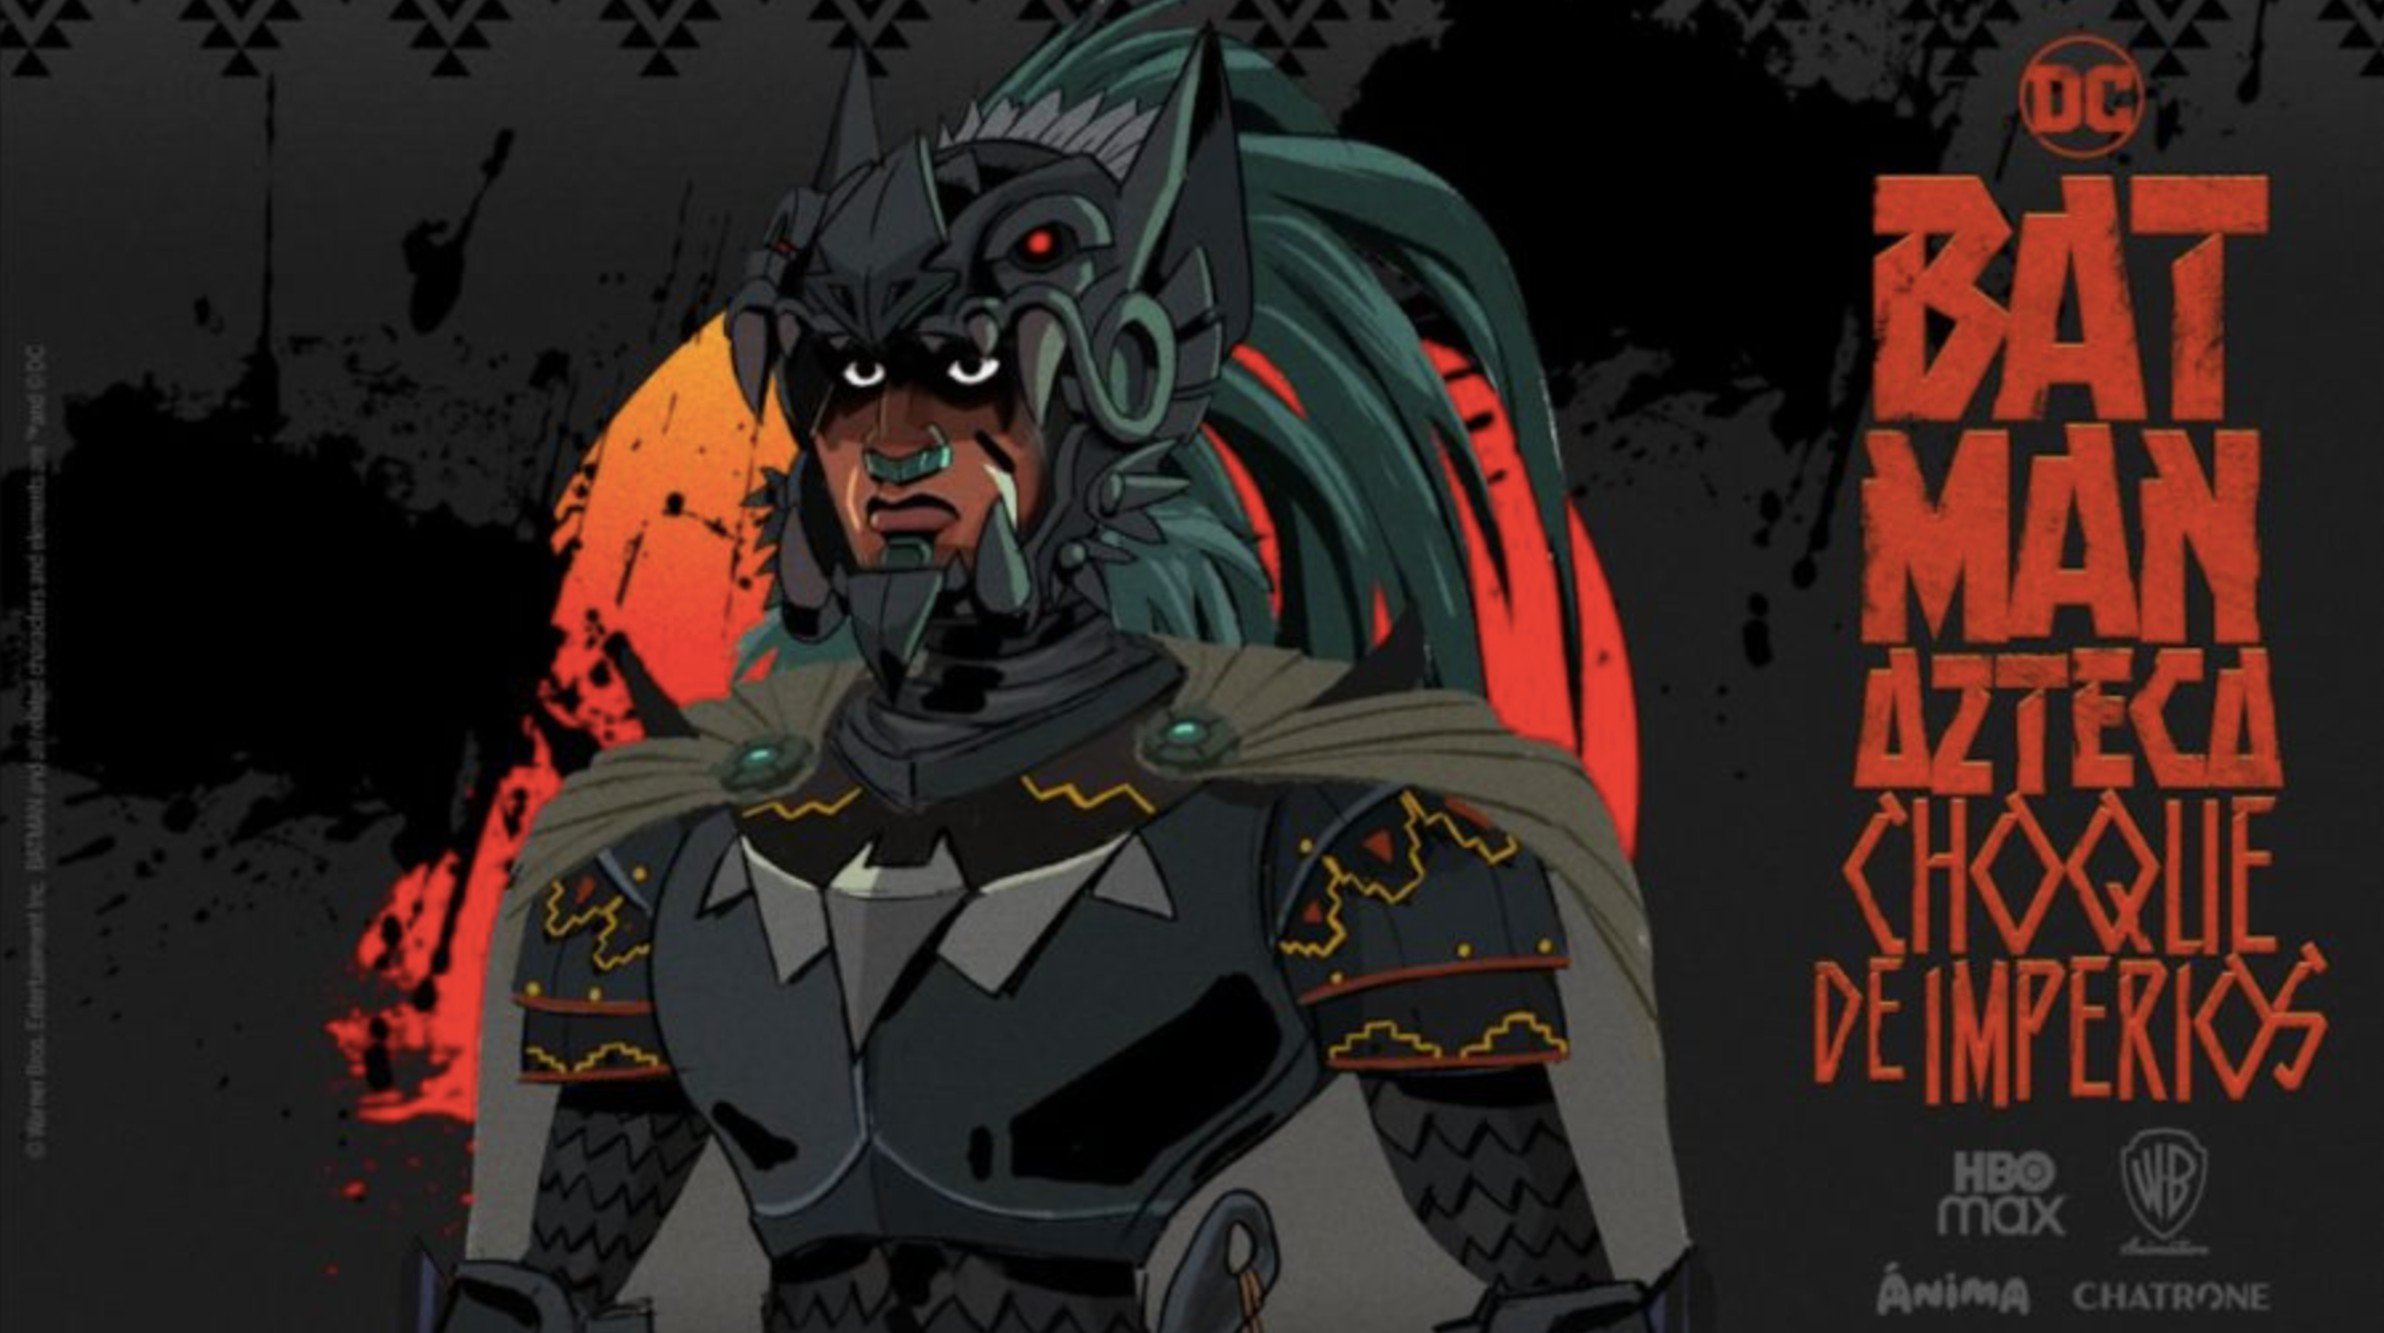 Batman Azteca: Choque de imperios aún no tiene fecha oficial de estreno.